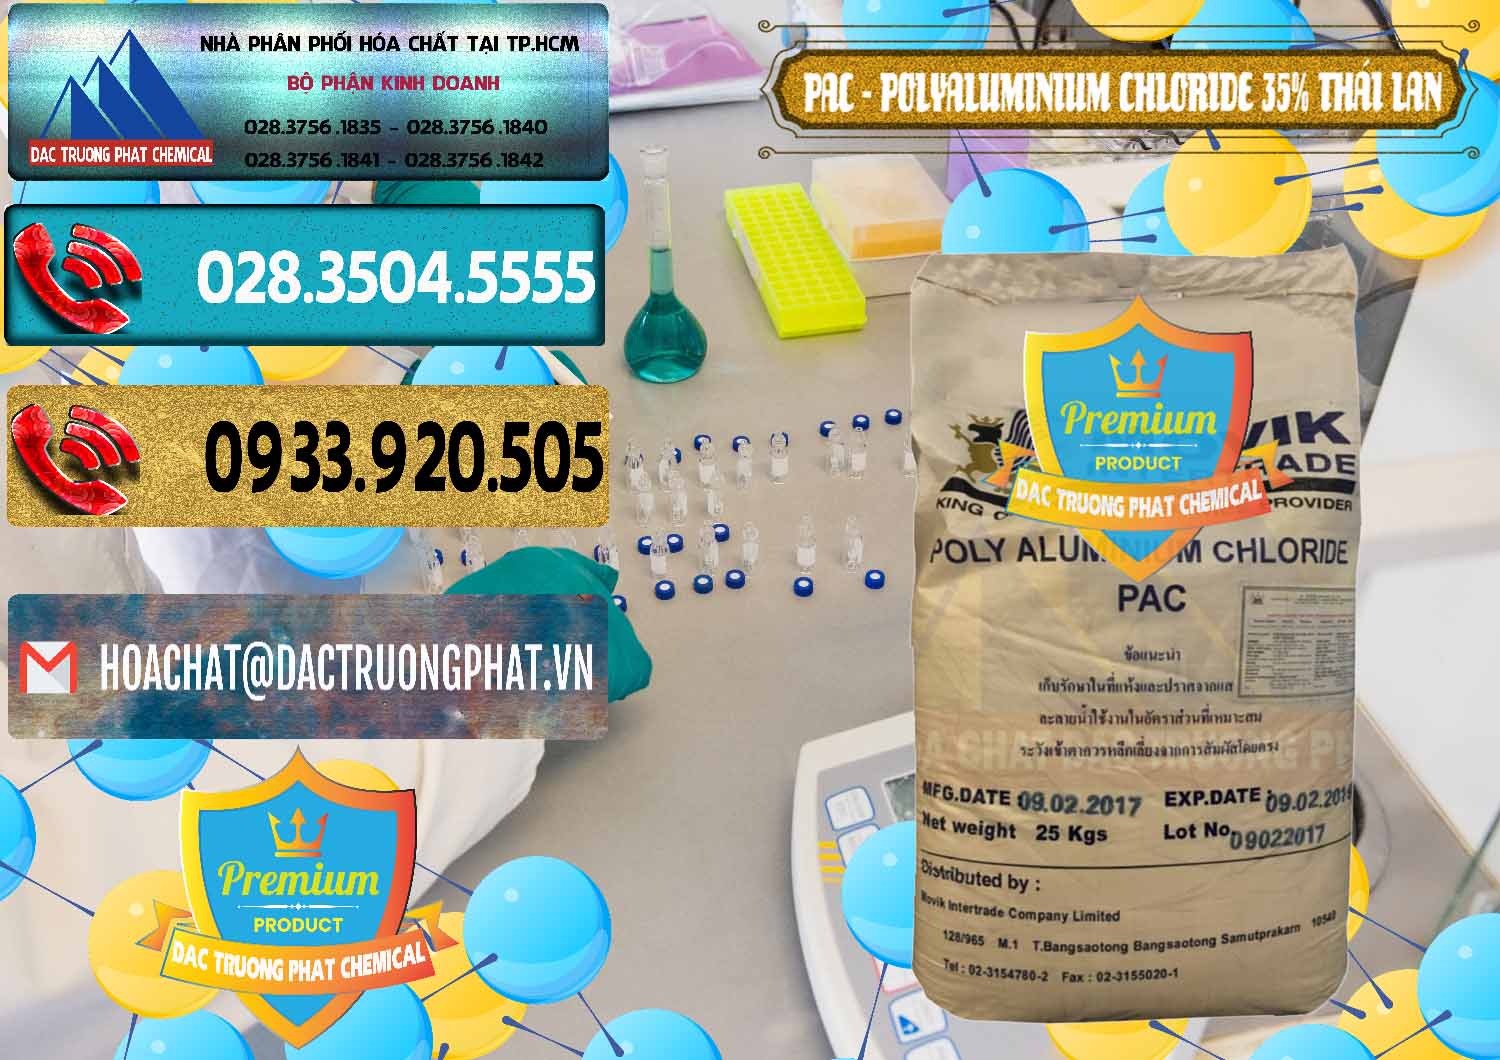 Cty chuyên bán ( cung ứng ) PAC - Polyaluminium Chloride 35% Thái Lan Thailand - 0470 - Nhà phân phối _ cung cấp hóa chất tại TP.HCM - hoachatdetnhuom.com